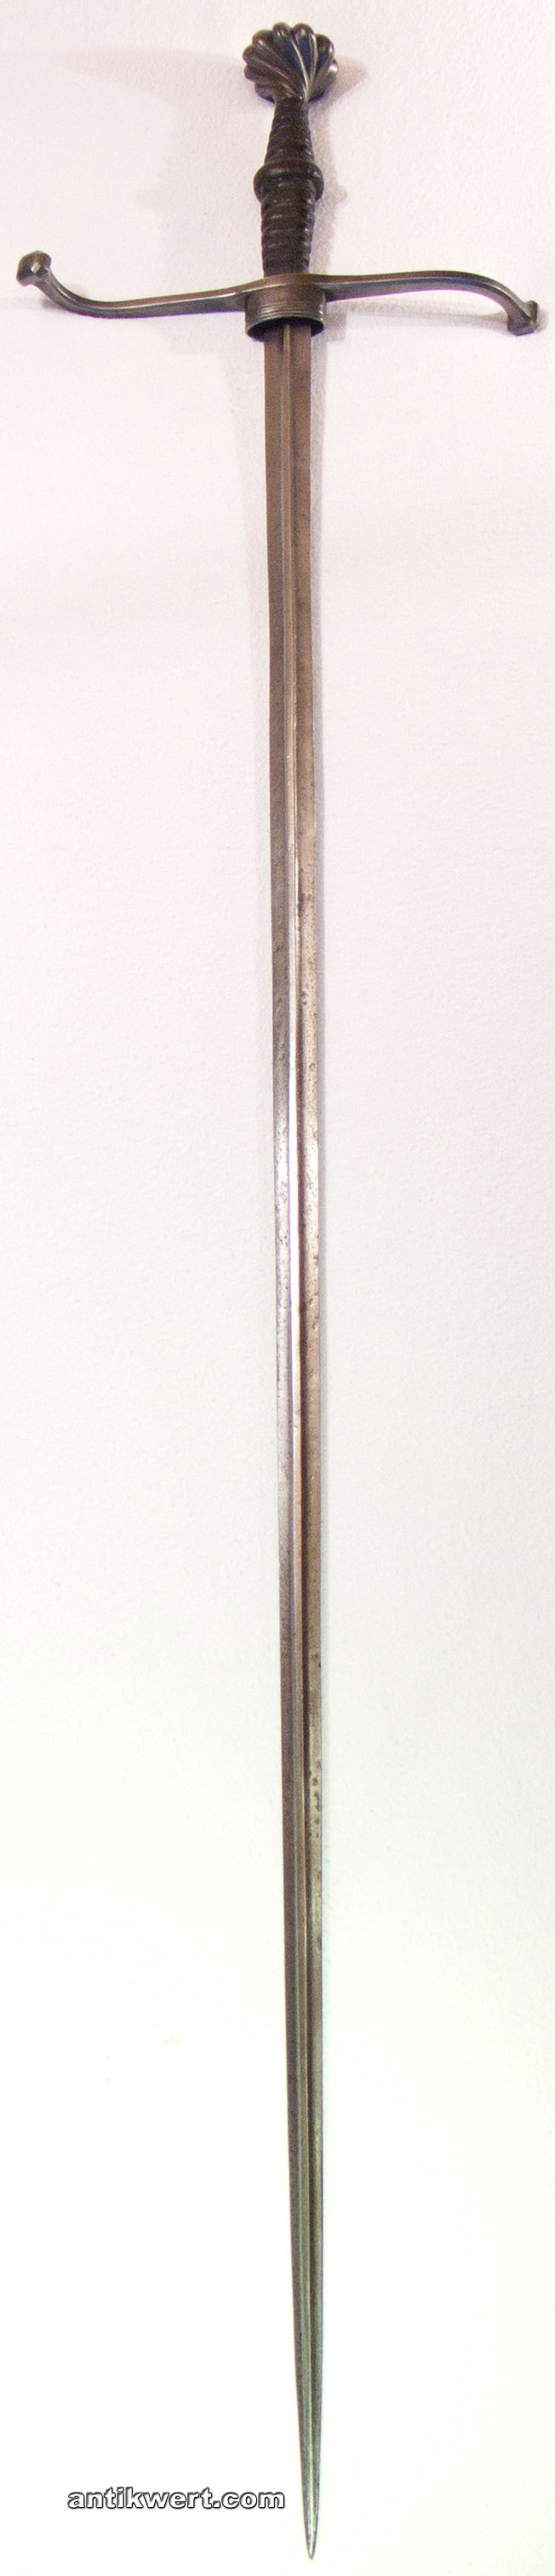 Stech-Schwert mit Mittelgrat zum durchstossen des Kettenhemdes